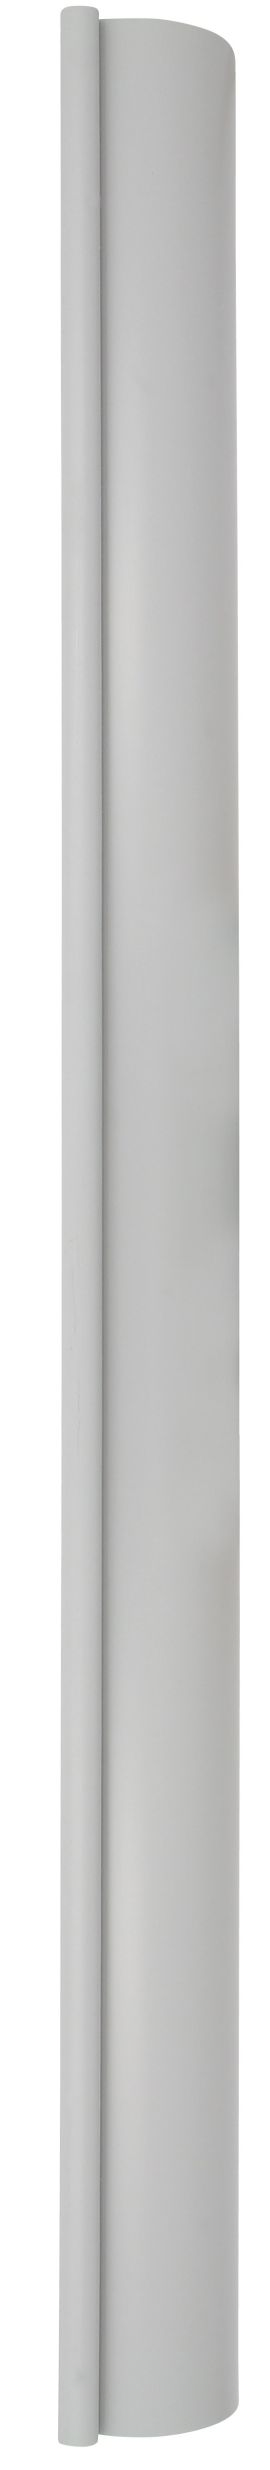 Profile de gouttiere type 16 en 4m gris